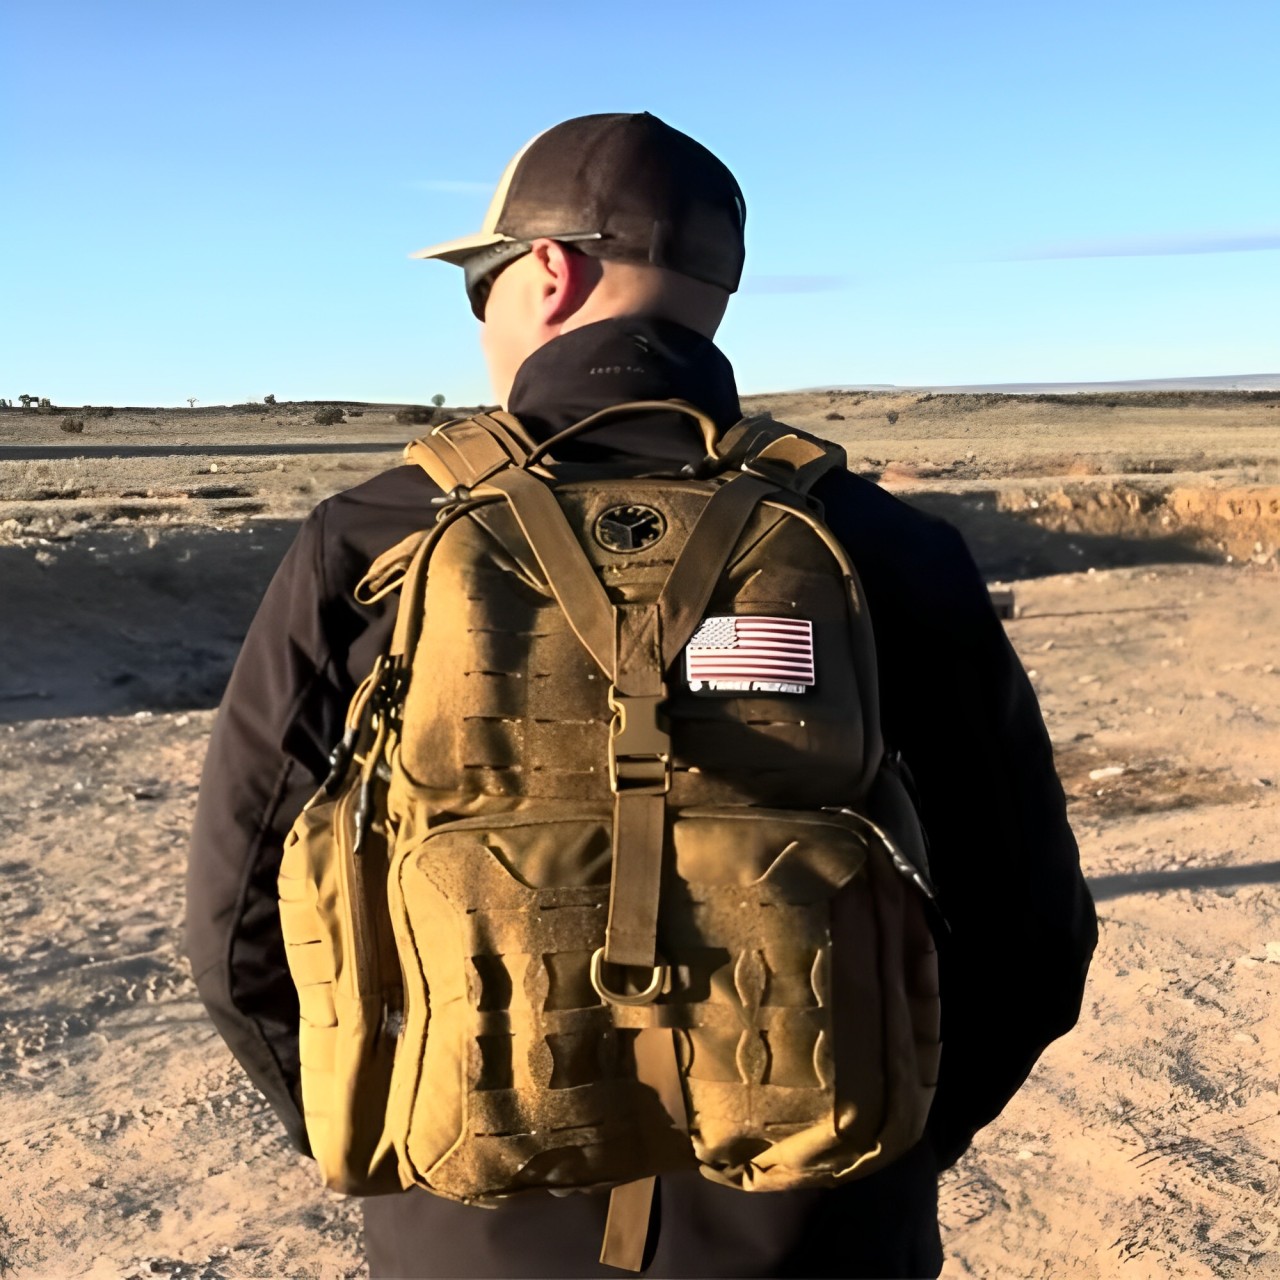  Shooting Range Backpack 